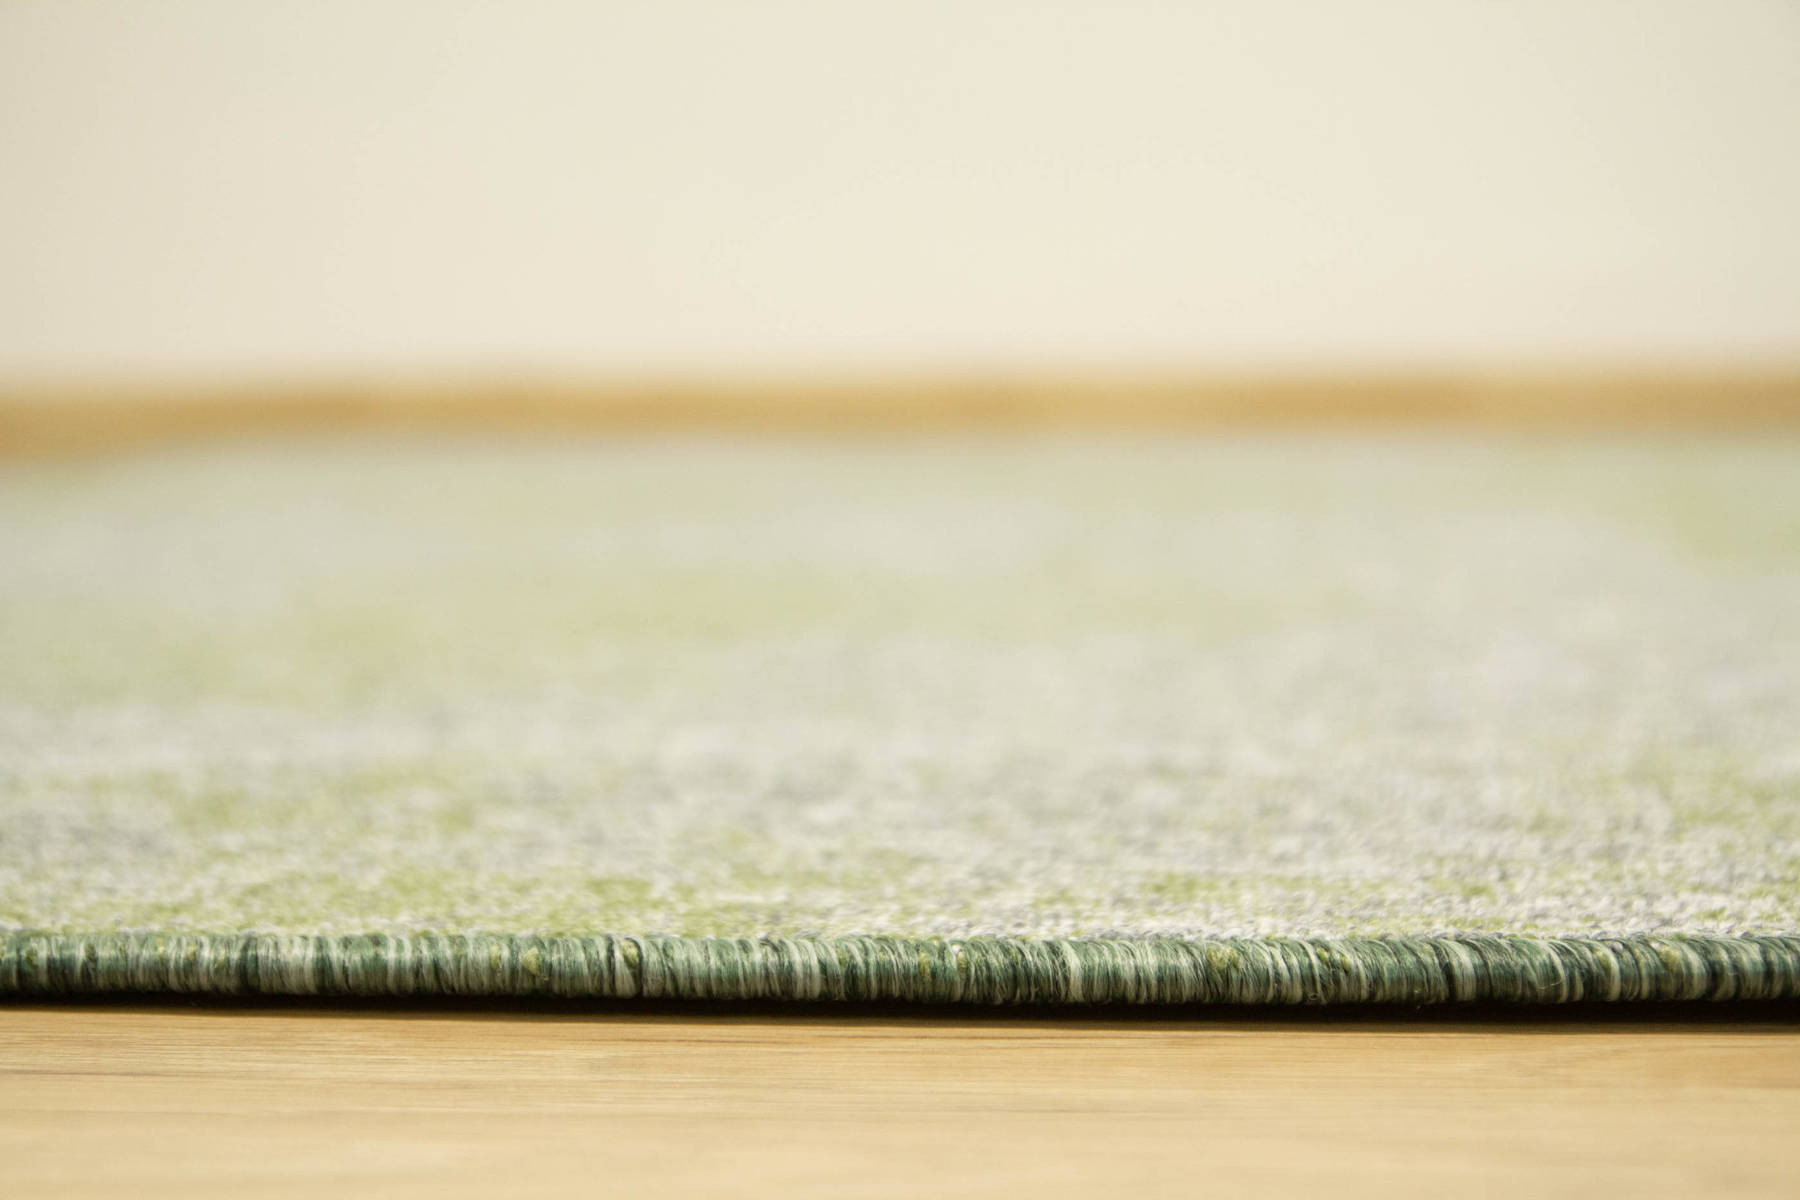 Metrážový koberec Serenity 41 šedý olivový